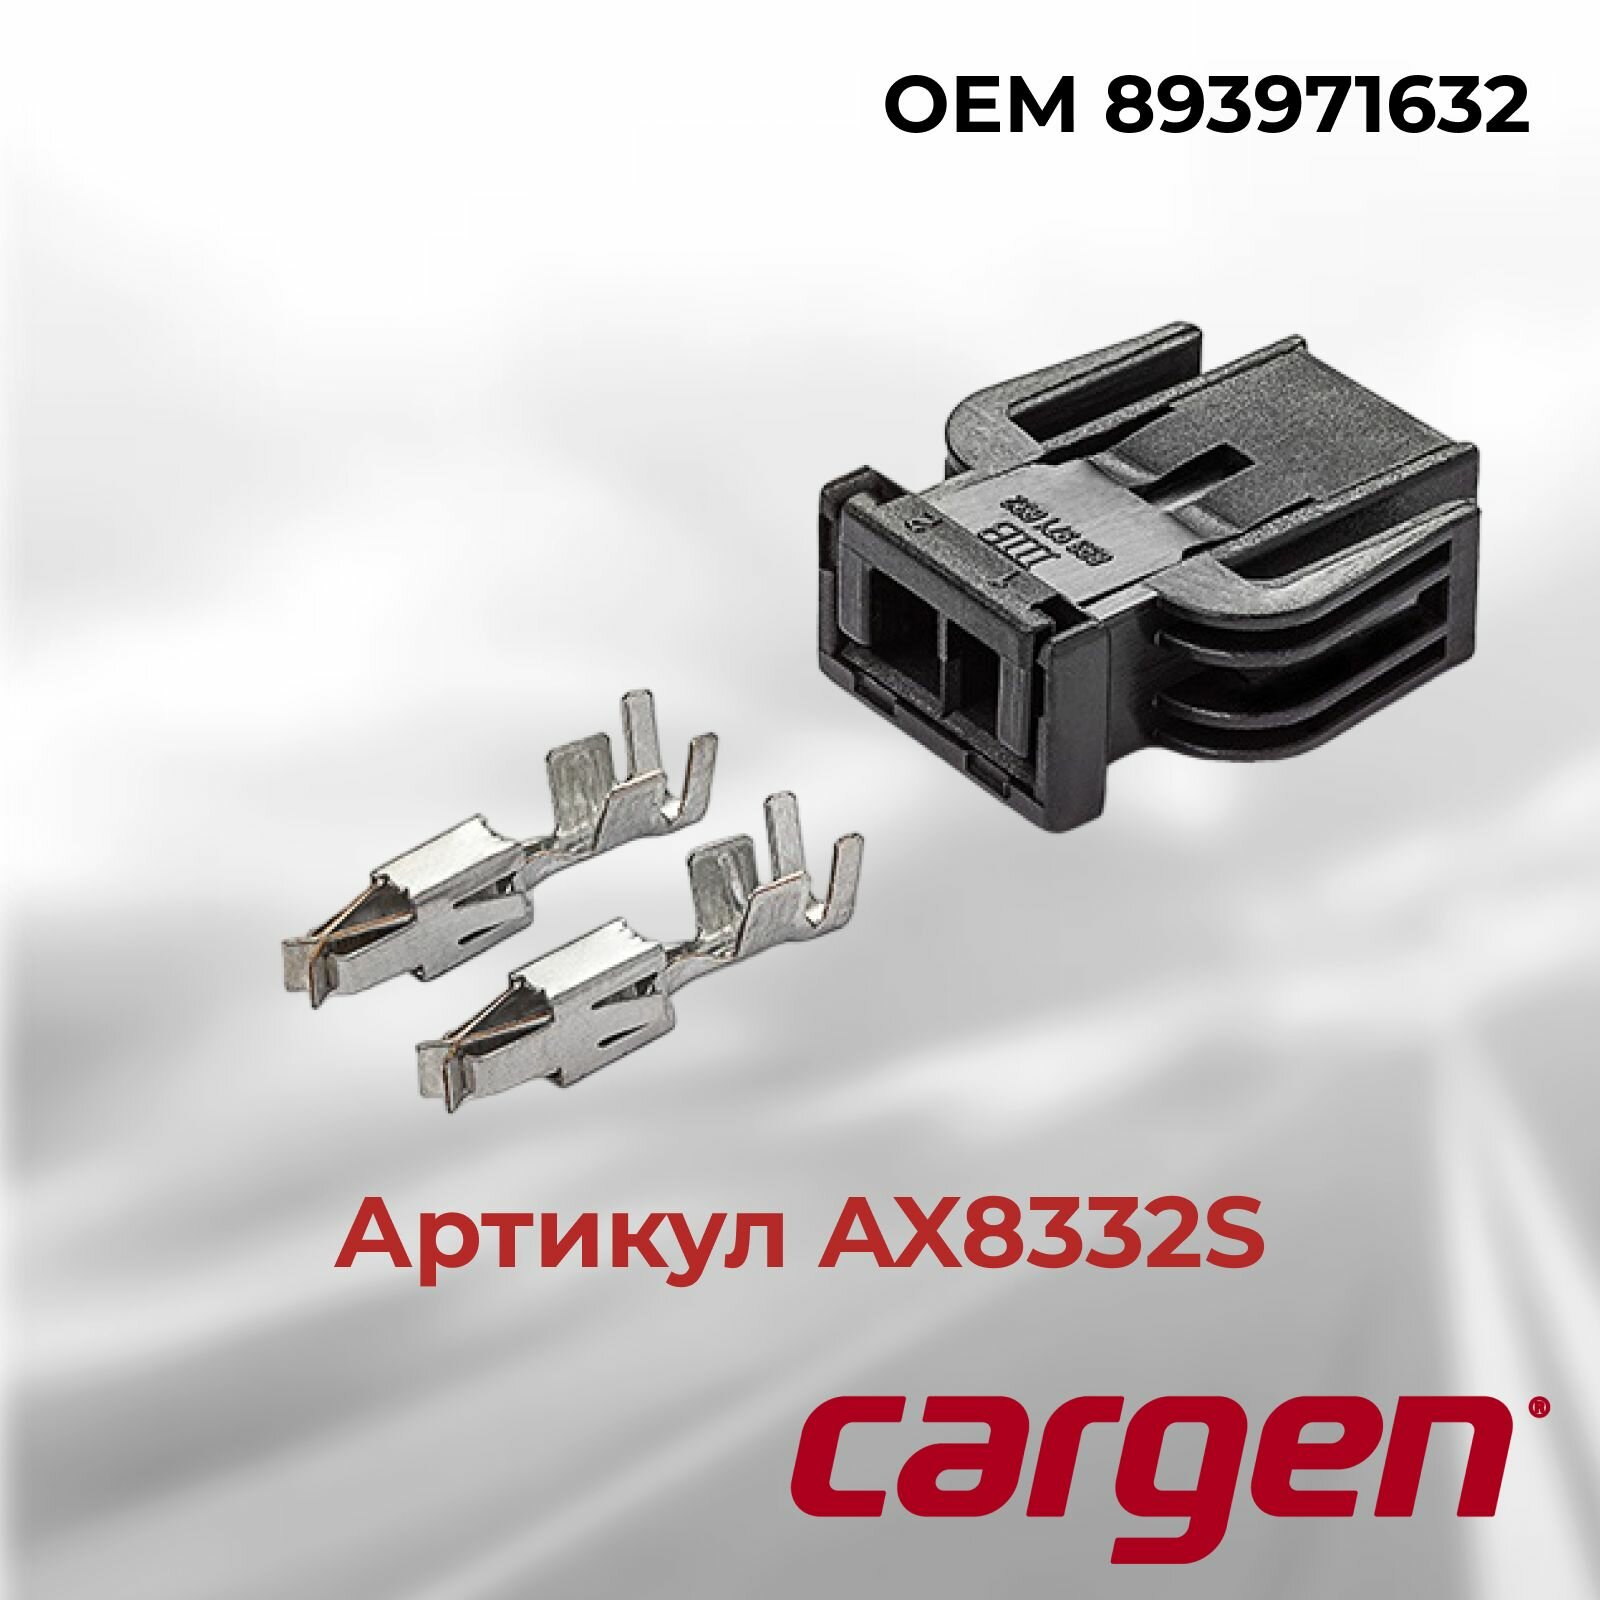 Разъем автомобильный 2 контакта (2 pin) переднего датчика АБС (ABS) Ауди (Audi) Фольксваген (Volkswagen) OEM 893971632